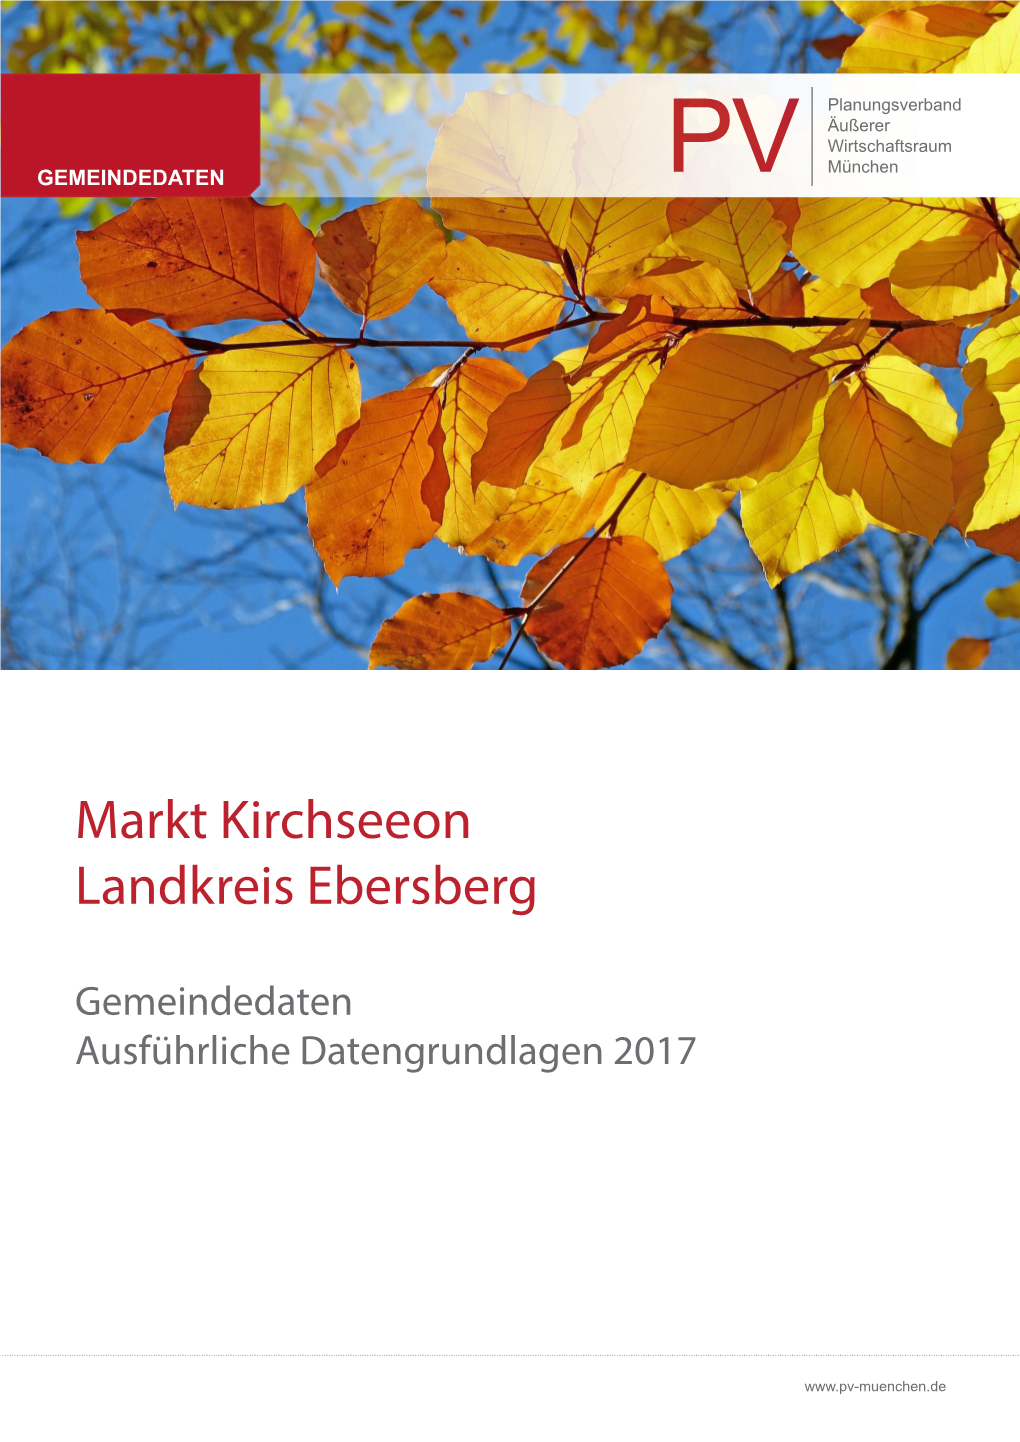 Gemeindedaten Markt Kirchseeon 2017